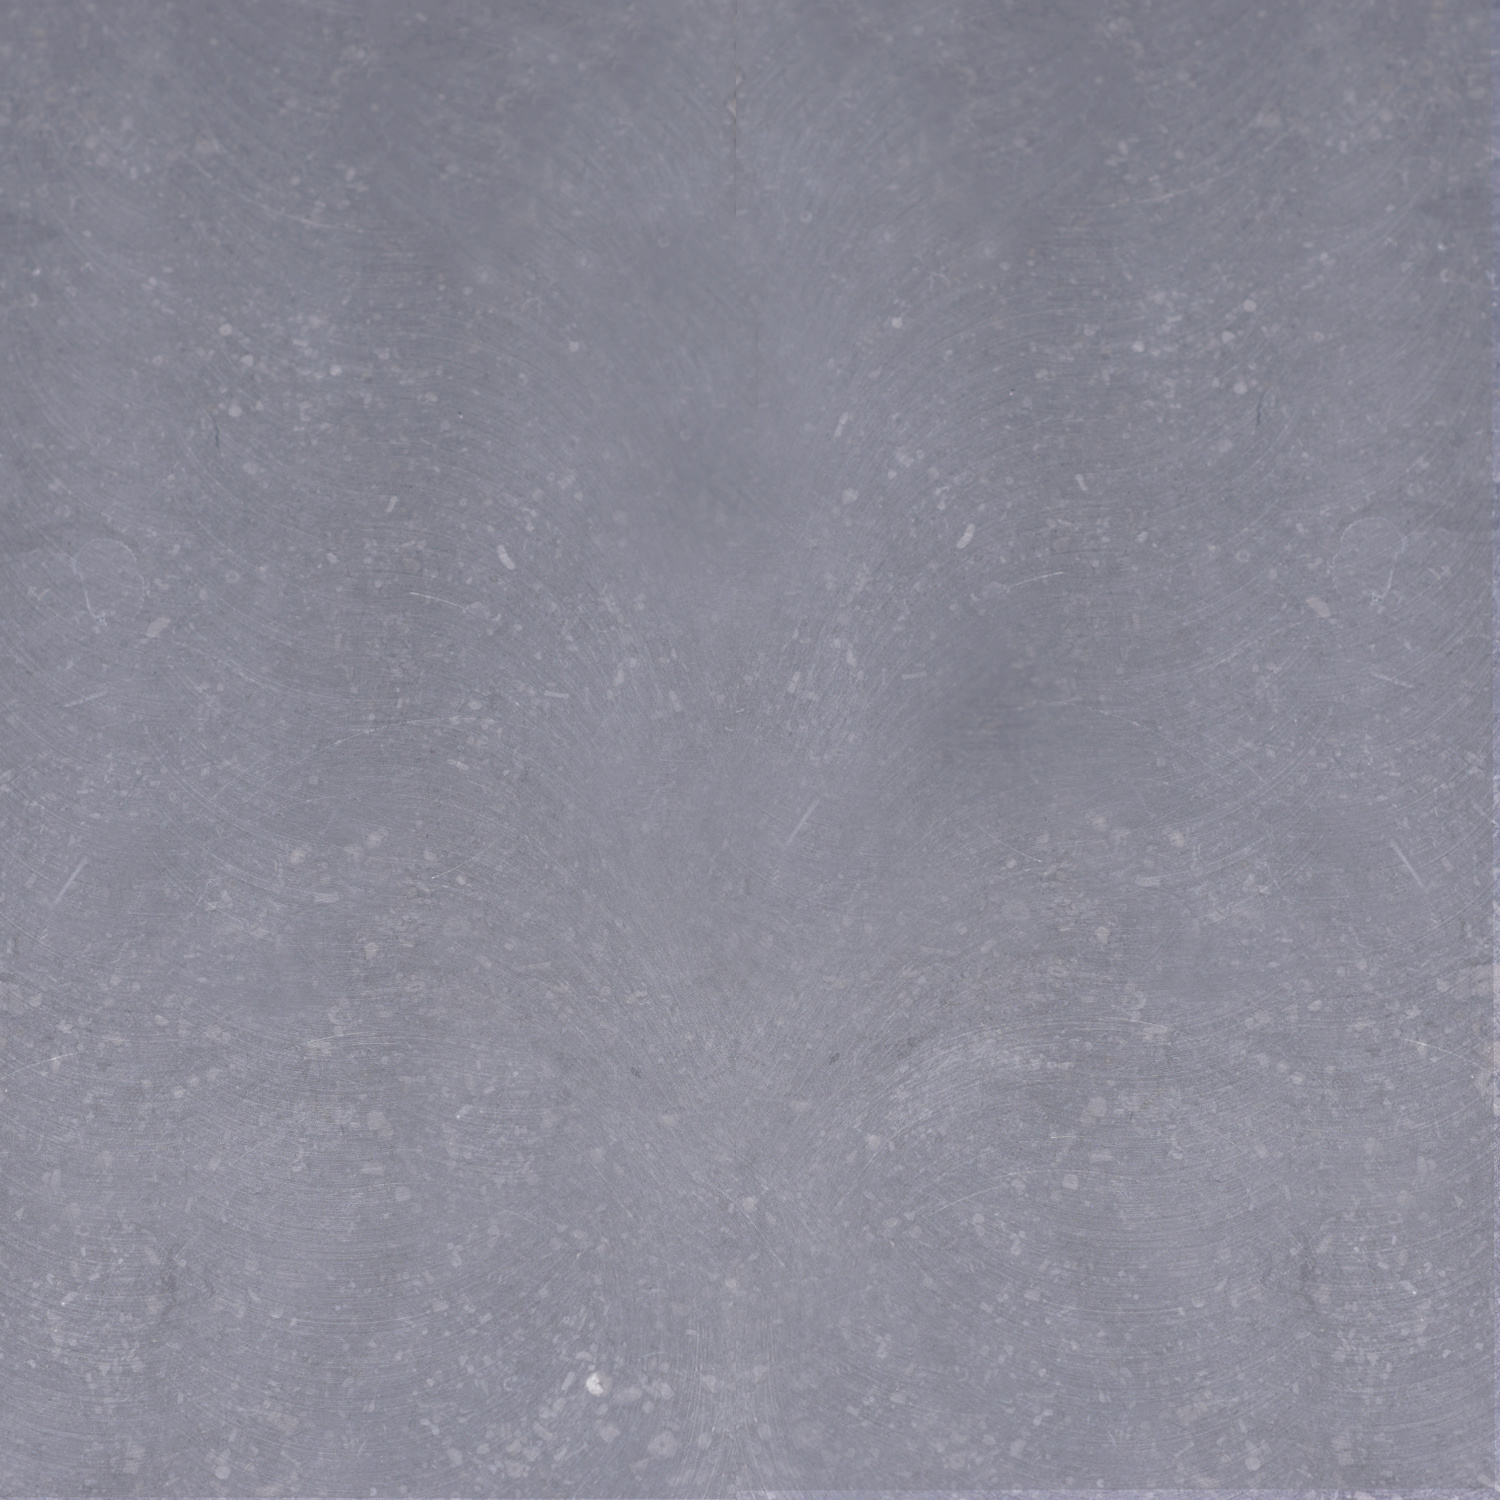  Muurafdekker Belgisch hardsteen gezoet 4 cm dik - OP MAAT-  15-120 cm breed - 50-230 cm lang - Muurafdekking buiten Licht / blauw gezoet  arduin